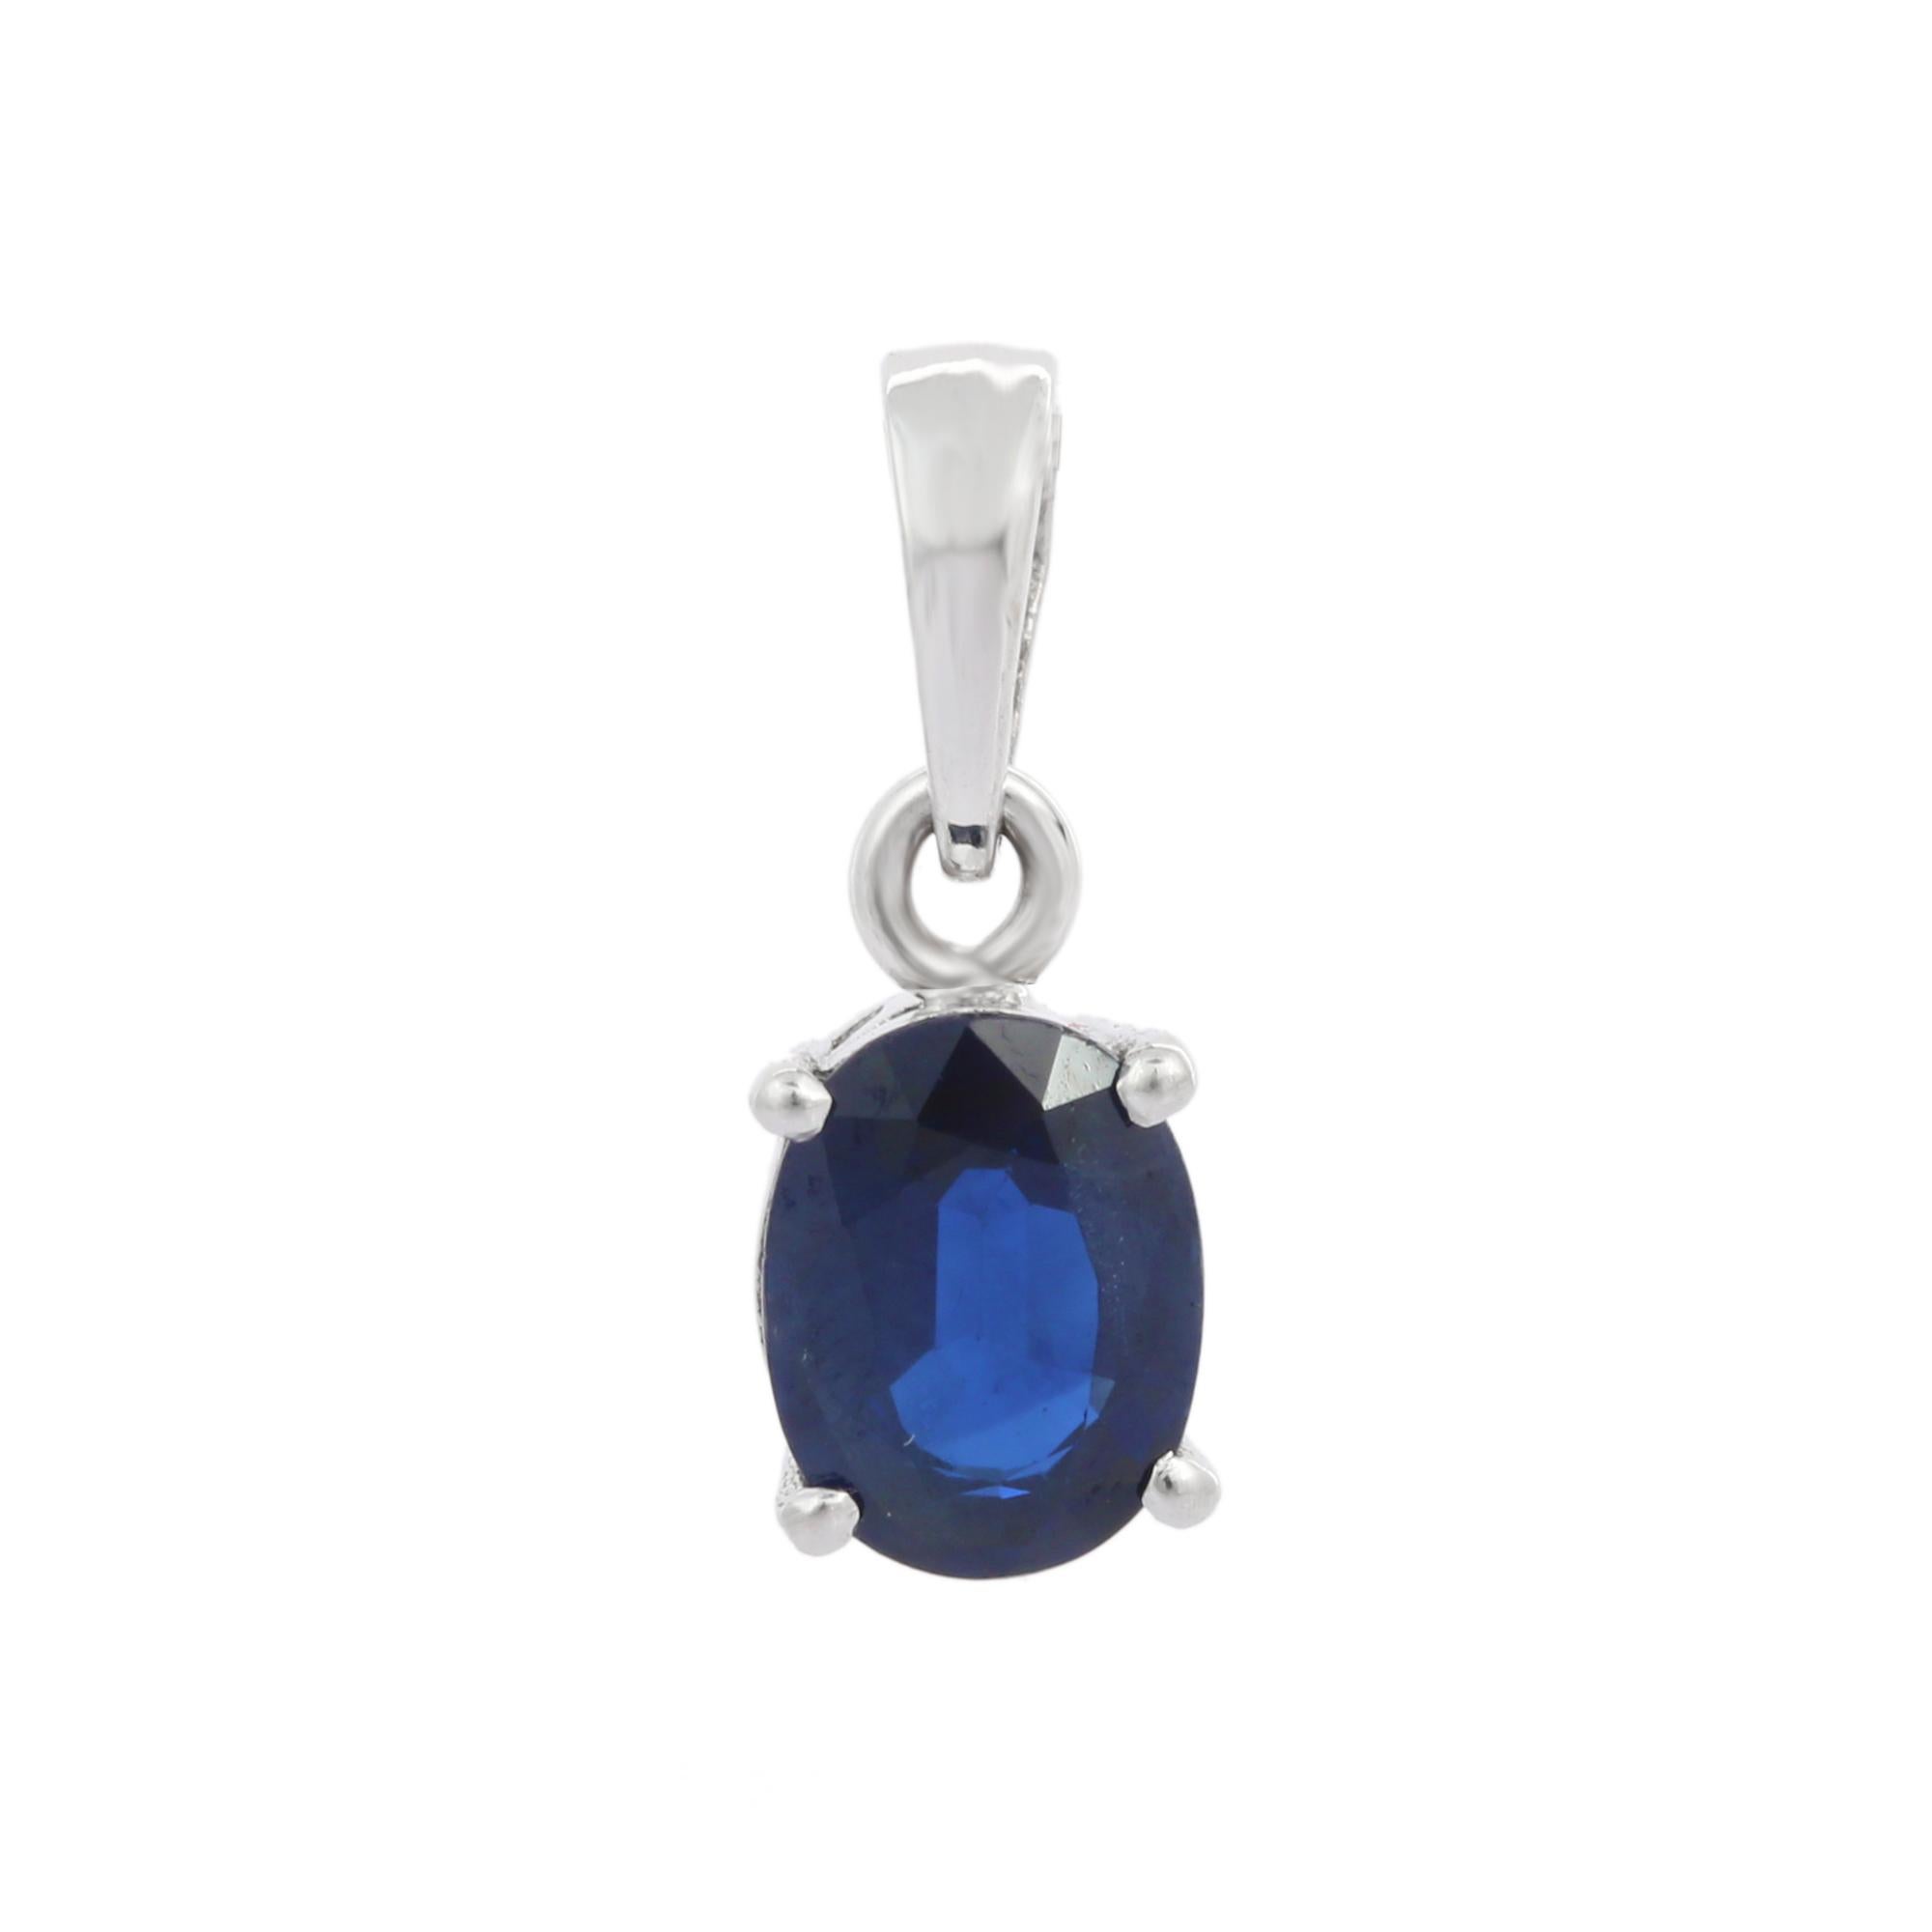 Pendentif en saphir bleu naturel en or 18K. Il possède un saphir de taille ovale qui complète votre look avec une touche décente. Les pendentifs sont utilisés pour être portés ou offerts pour représenter l'amour et les promesses. C'est un bijou